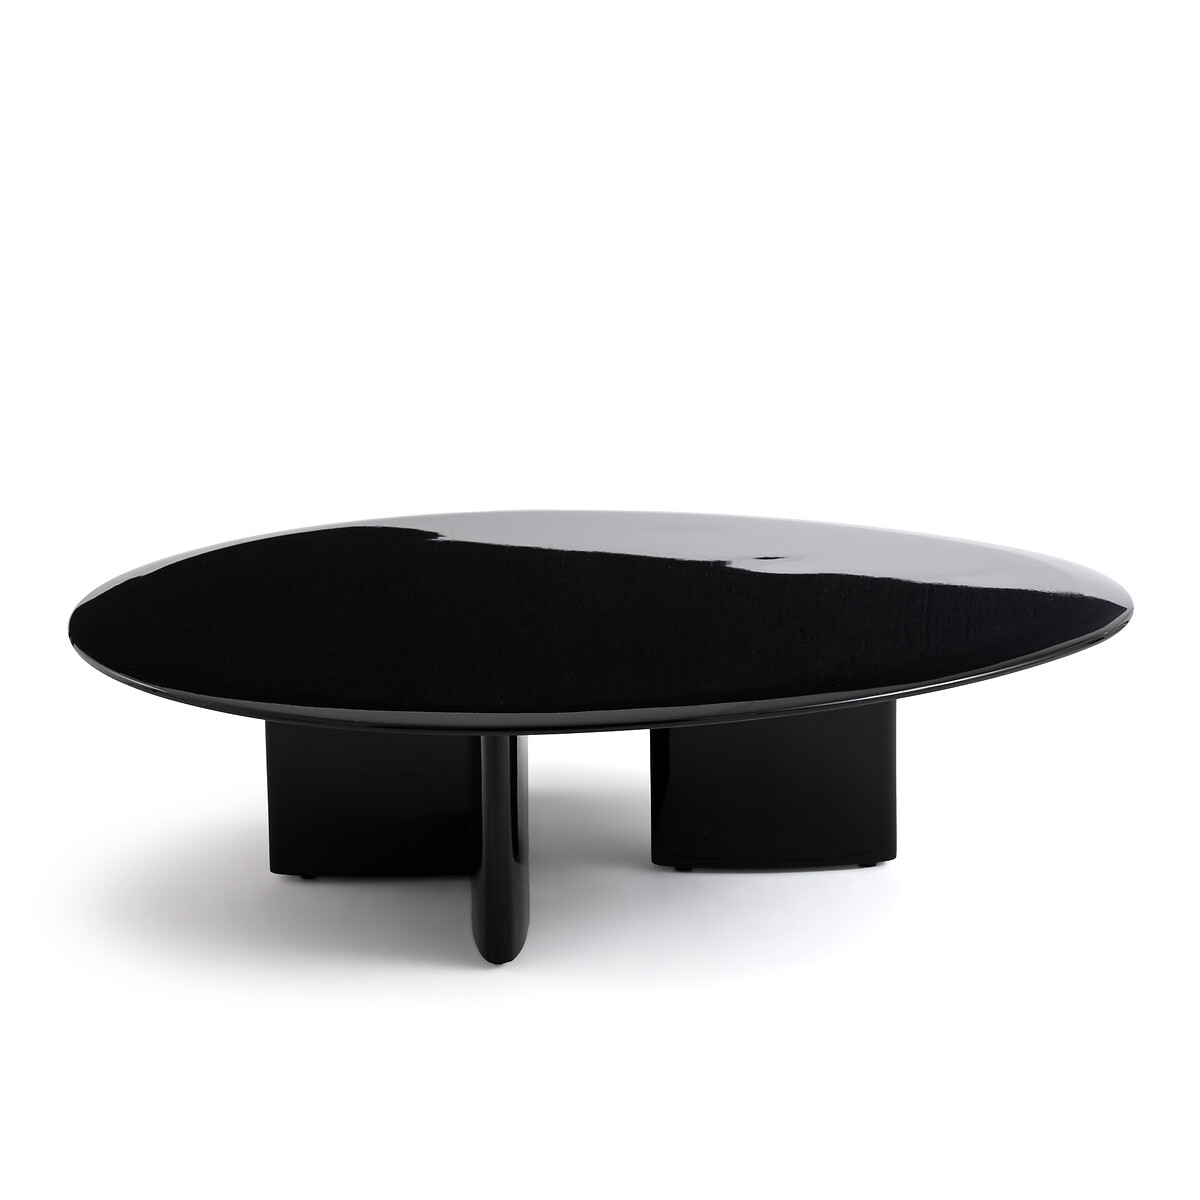 Стол журнальный лакированный Laki единый размер черный стол журнальный лакированный laki единый размер черный